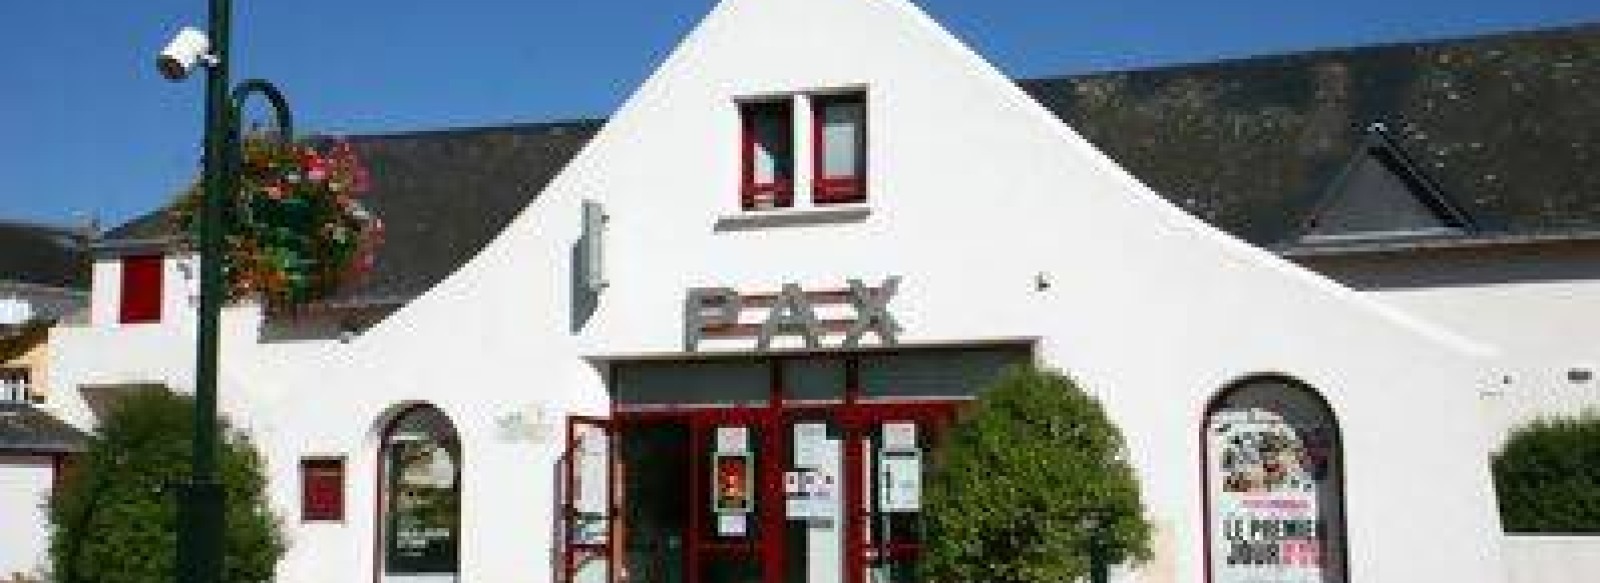 Cinema Pax